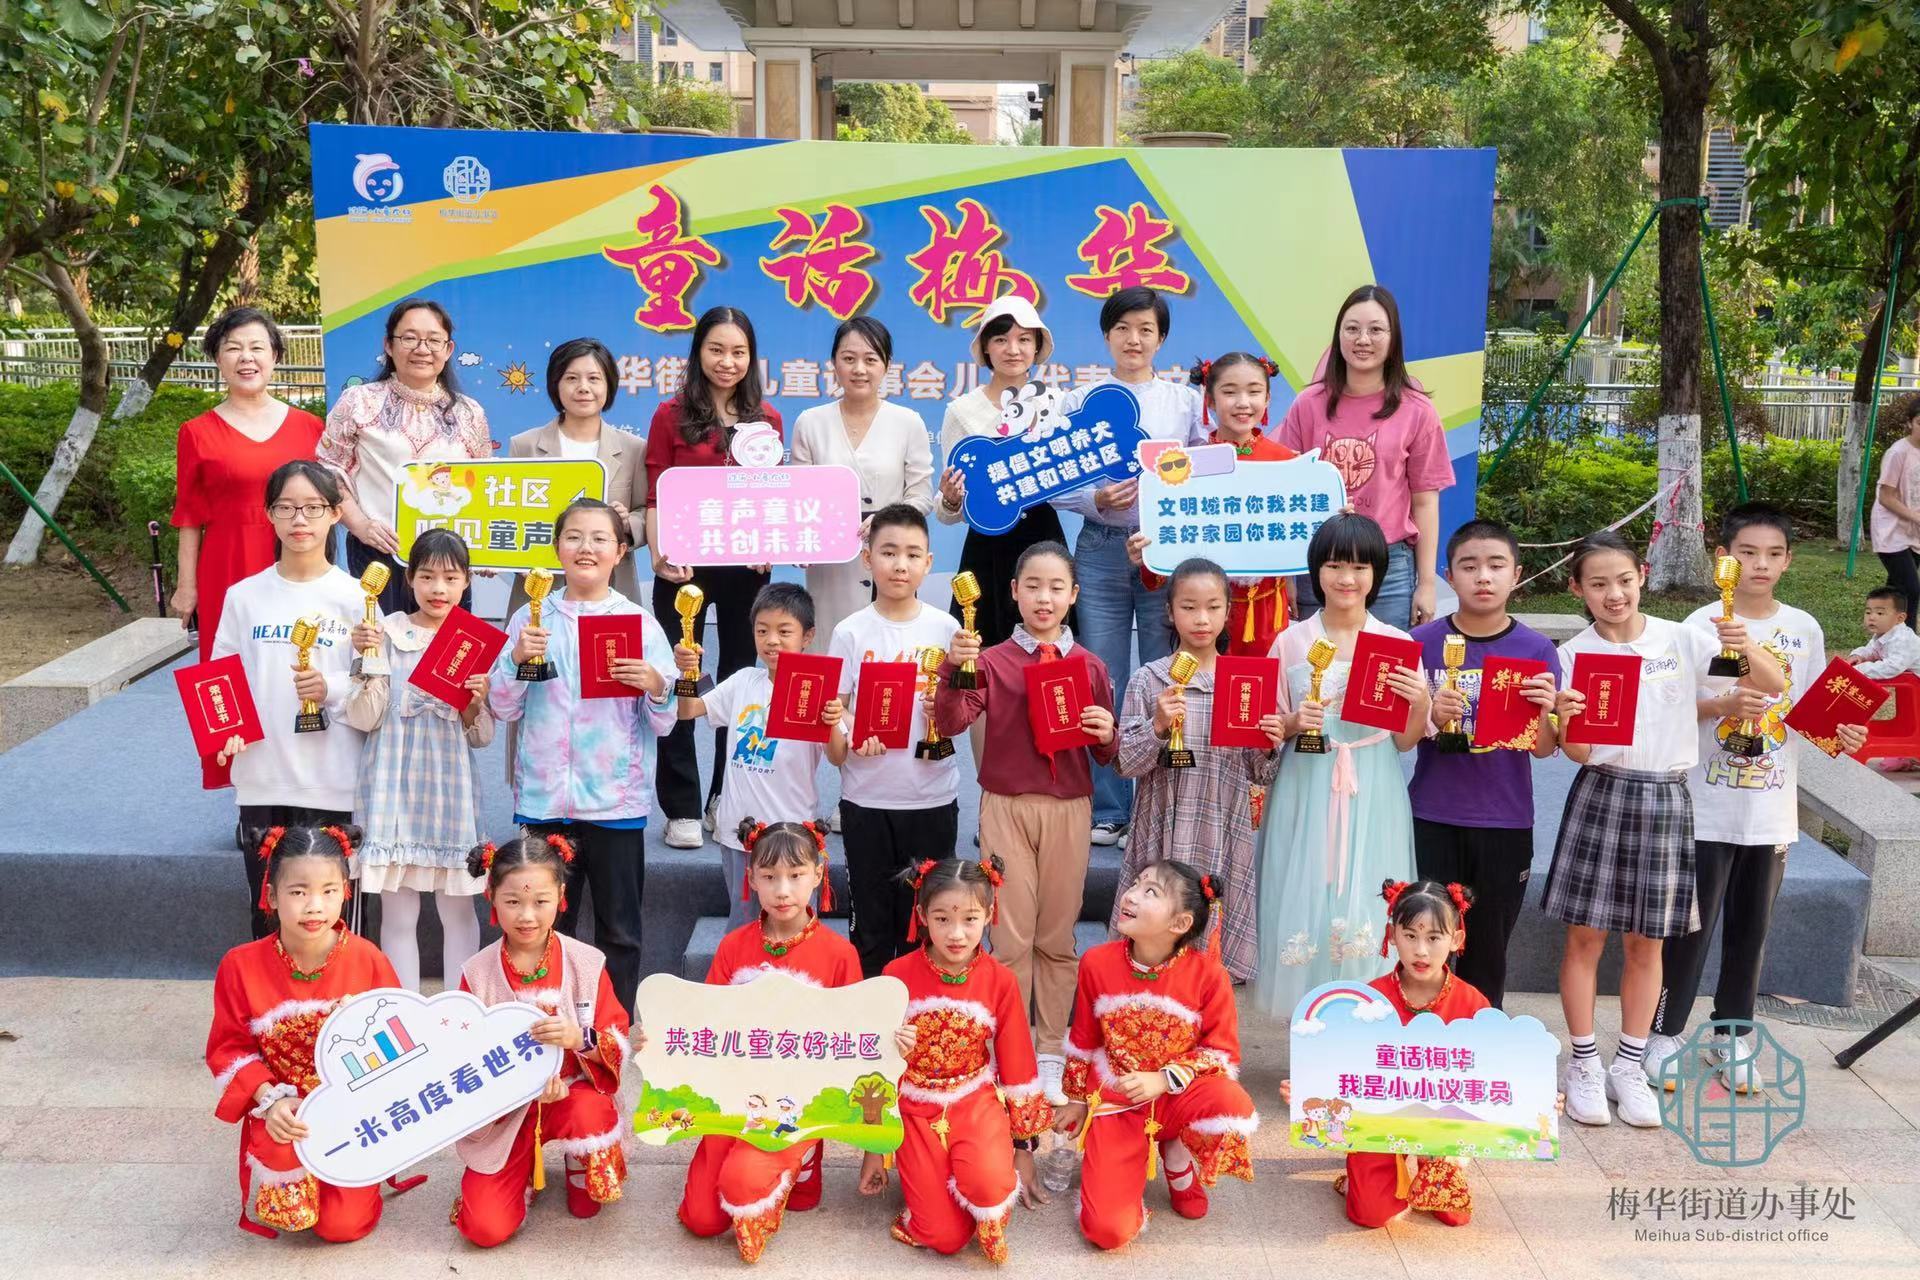 童言童语话文明,珠海梅华街道举办儿童议事活动